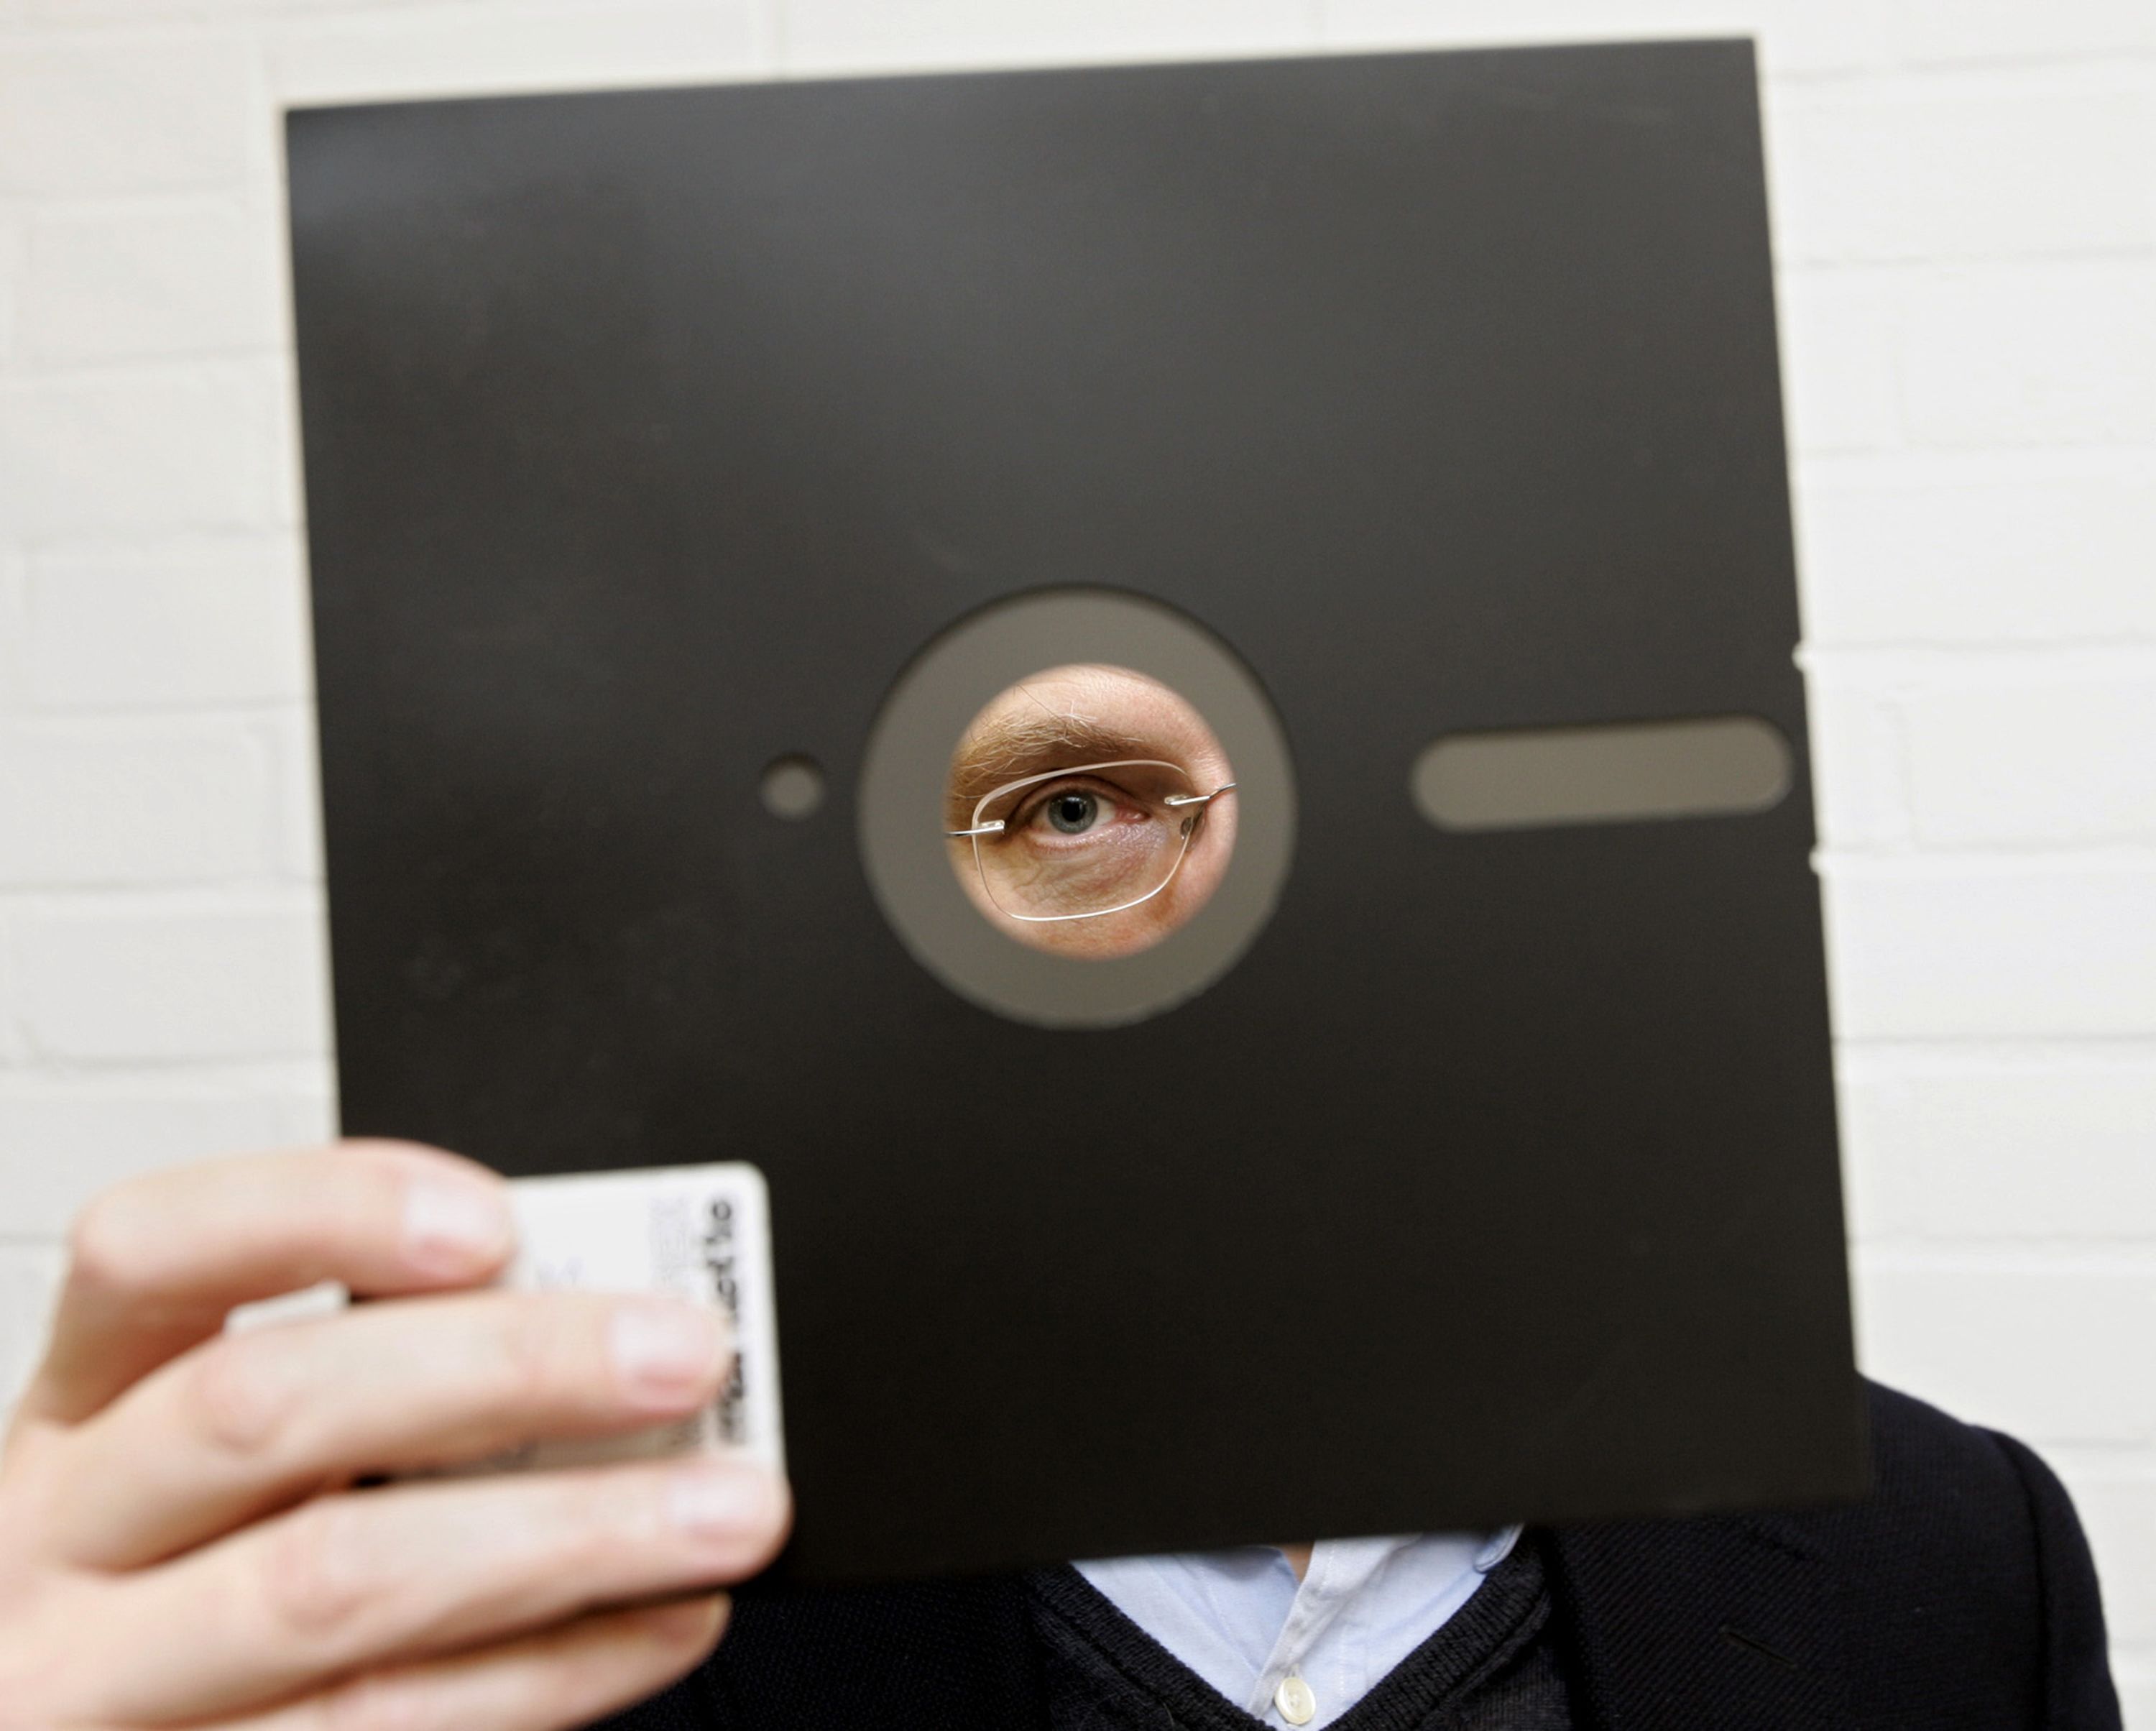 first floppy disk 1970